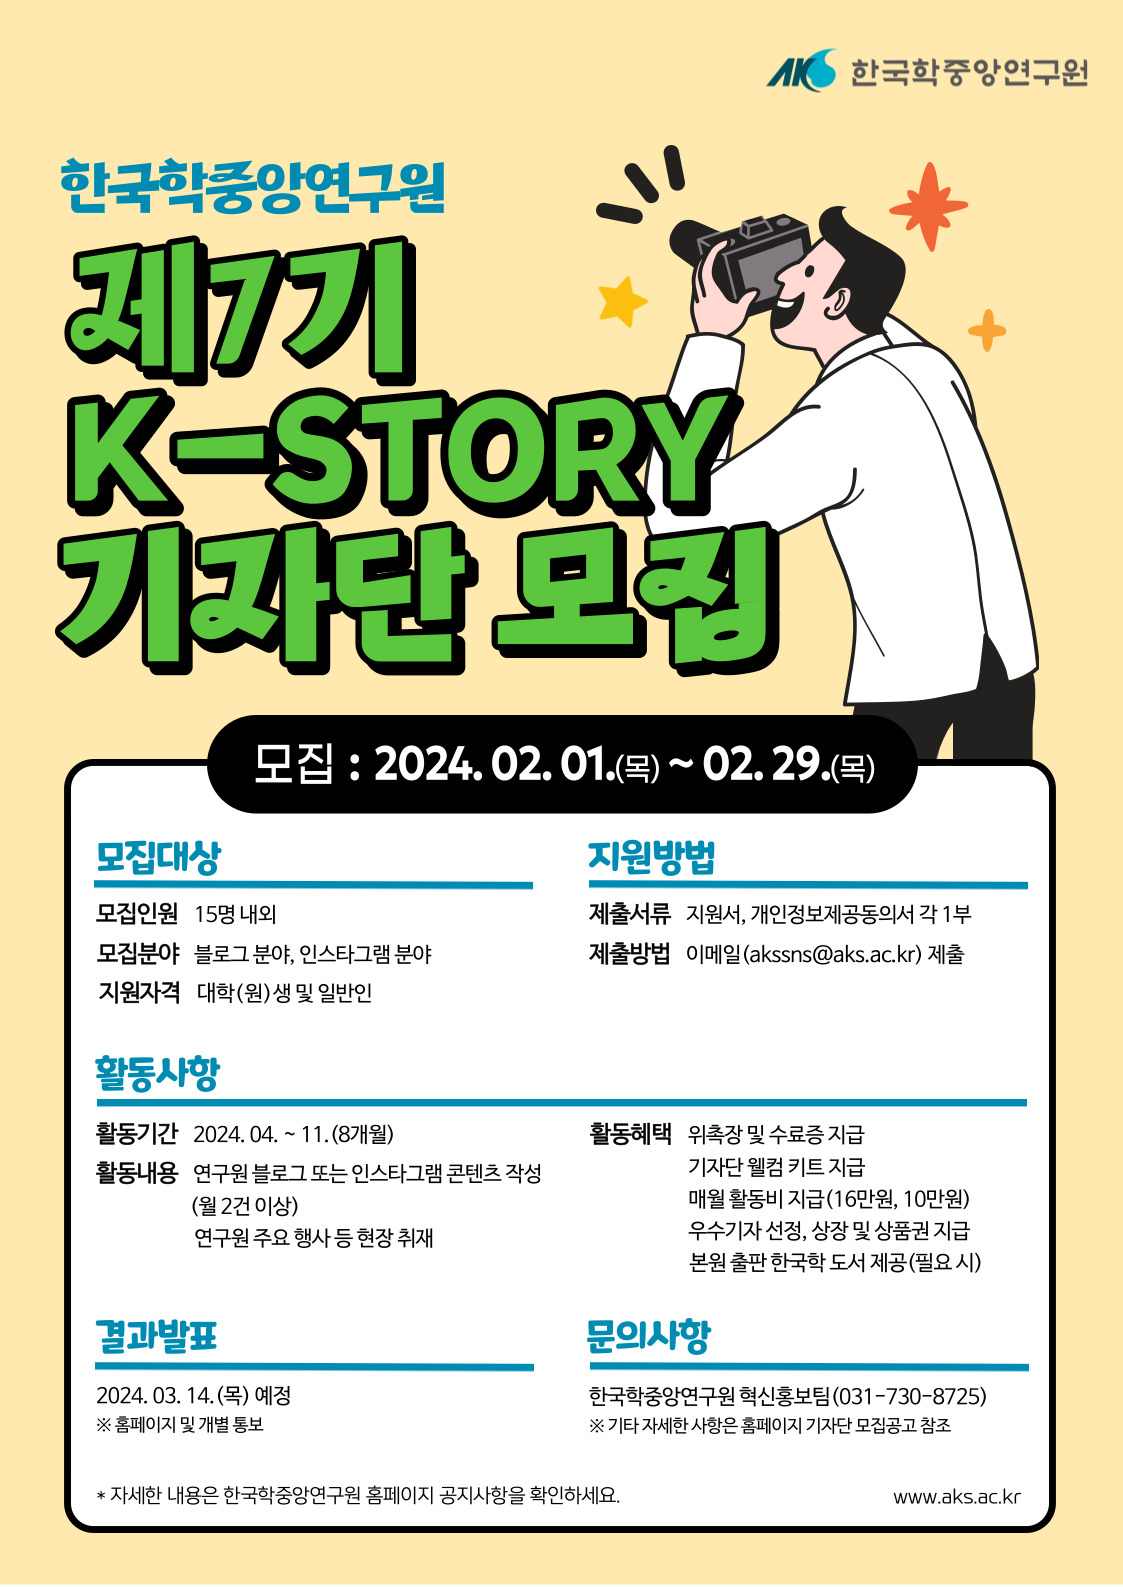 한국학중앙연구원 제7기 K-STORY 기자단 모집